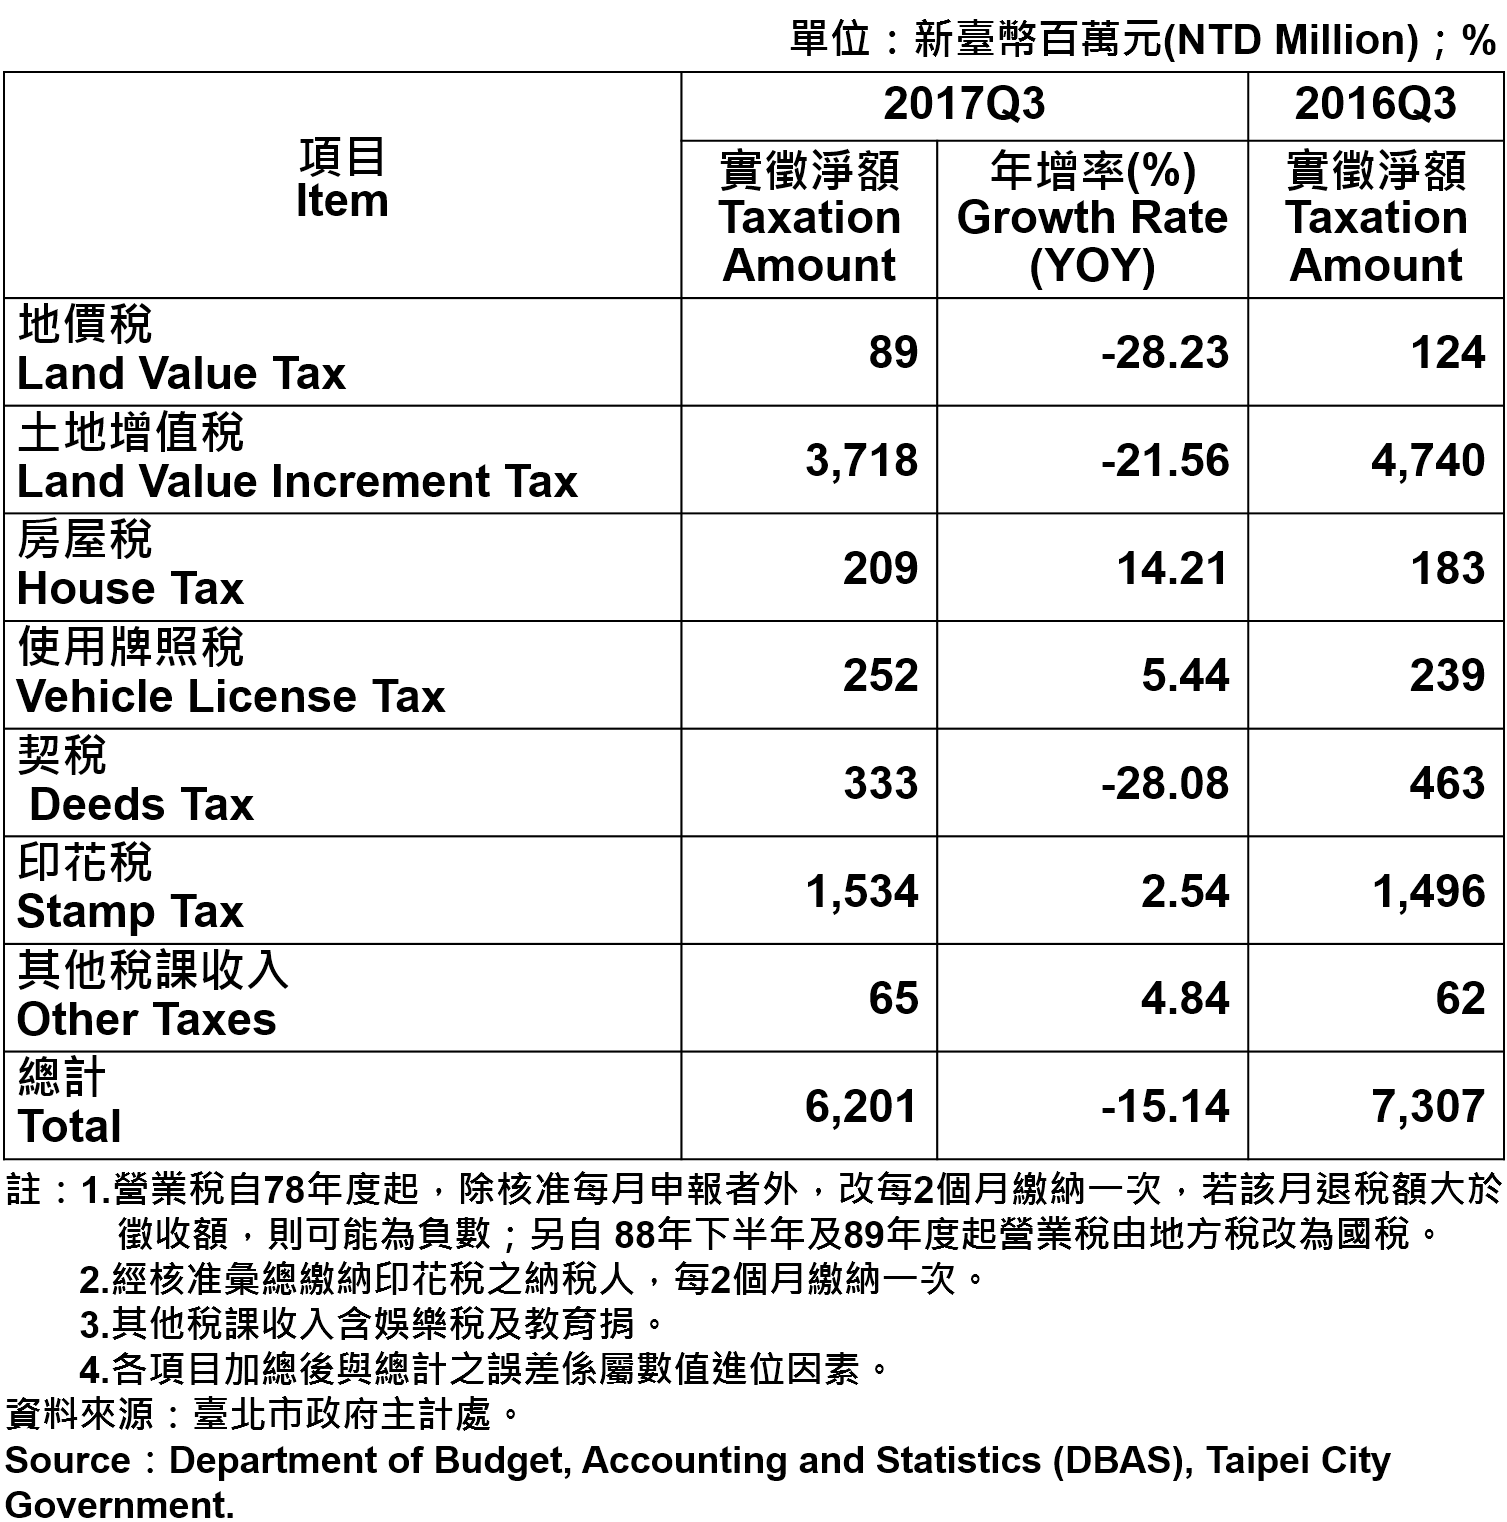 表3、臺北市地方稅收統計—2017Q3  Taxation of Taipei City—2017Q3